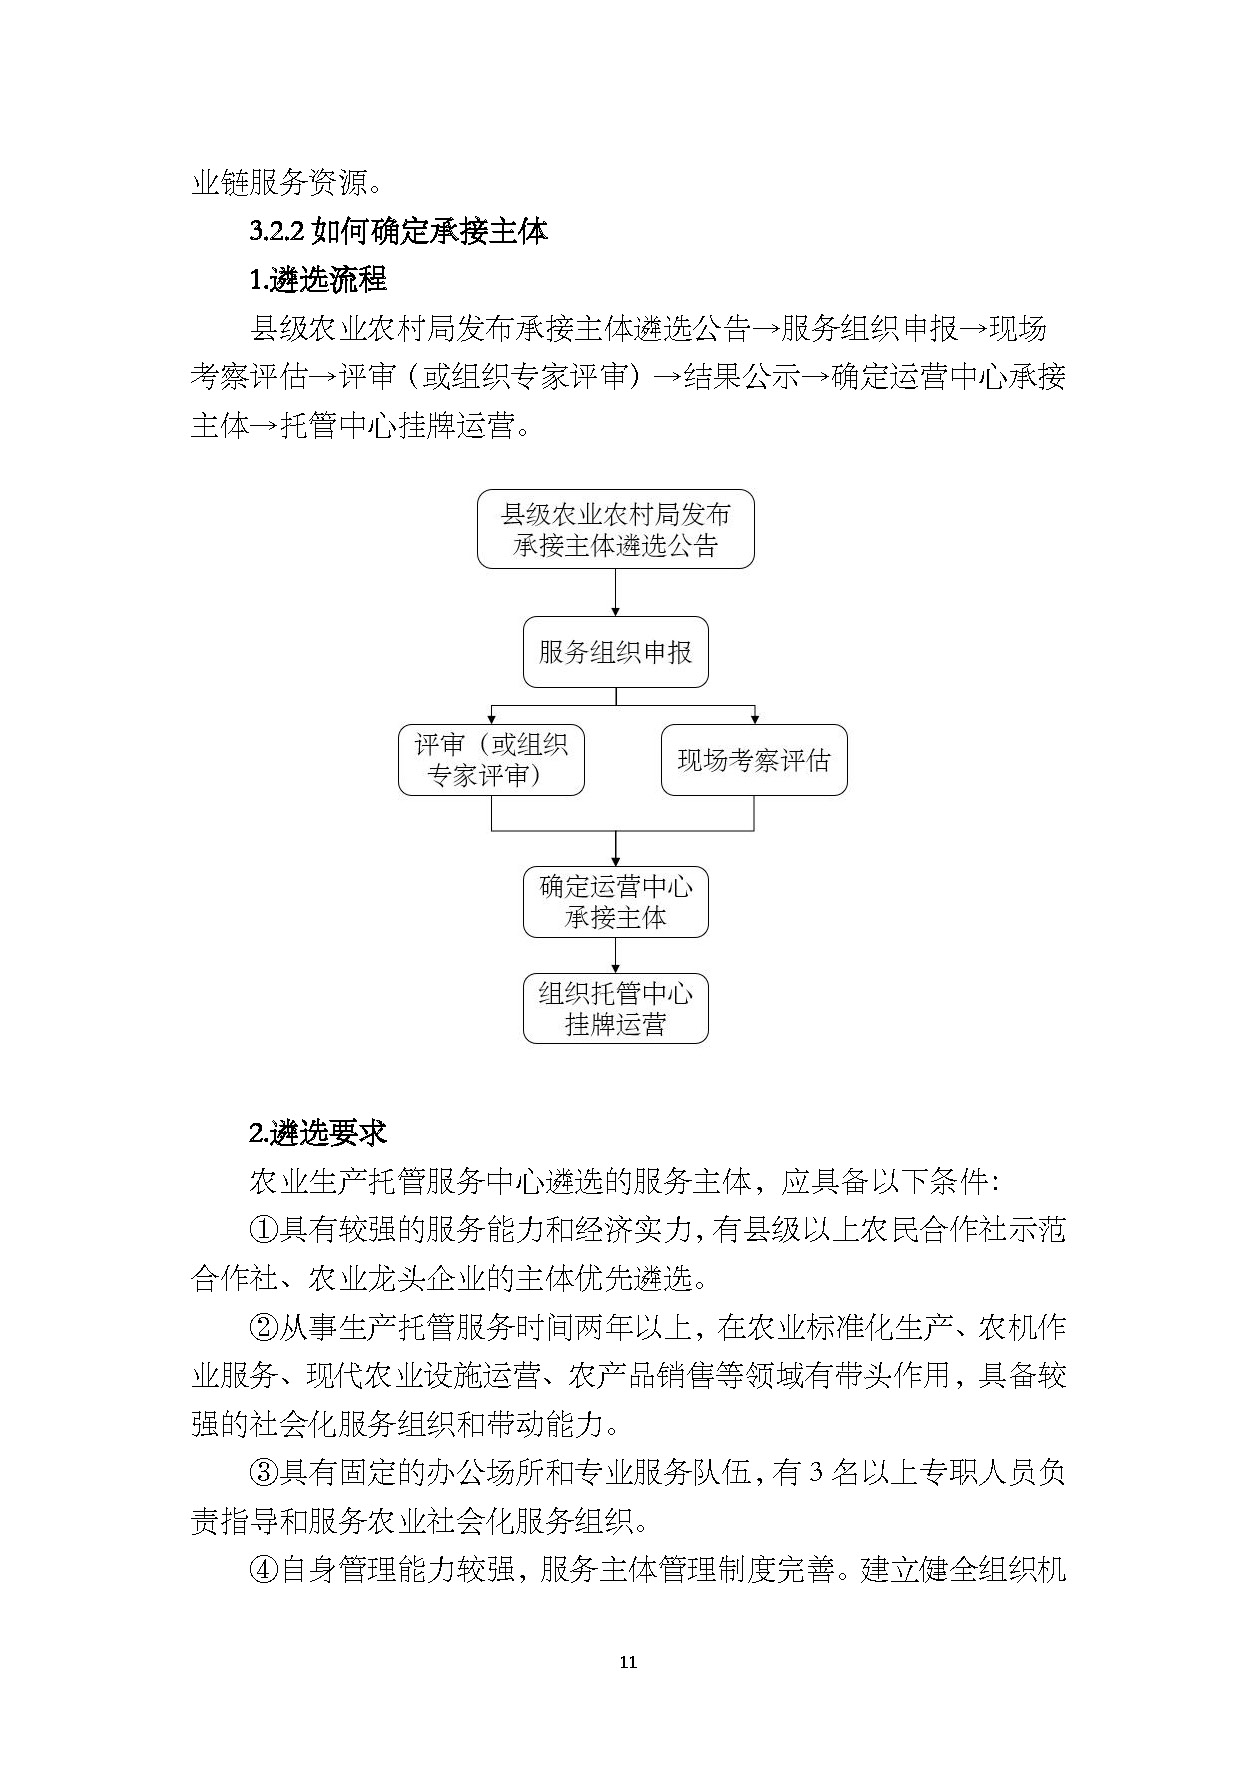 1.广东省农业生产托管服务工作手册_页面_13.jpg